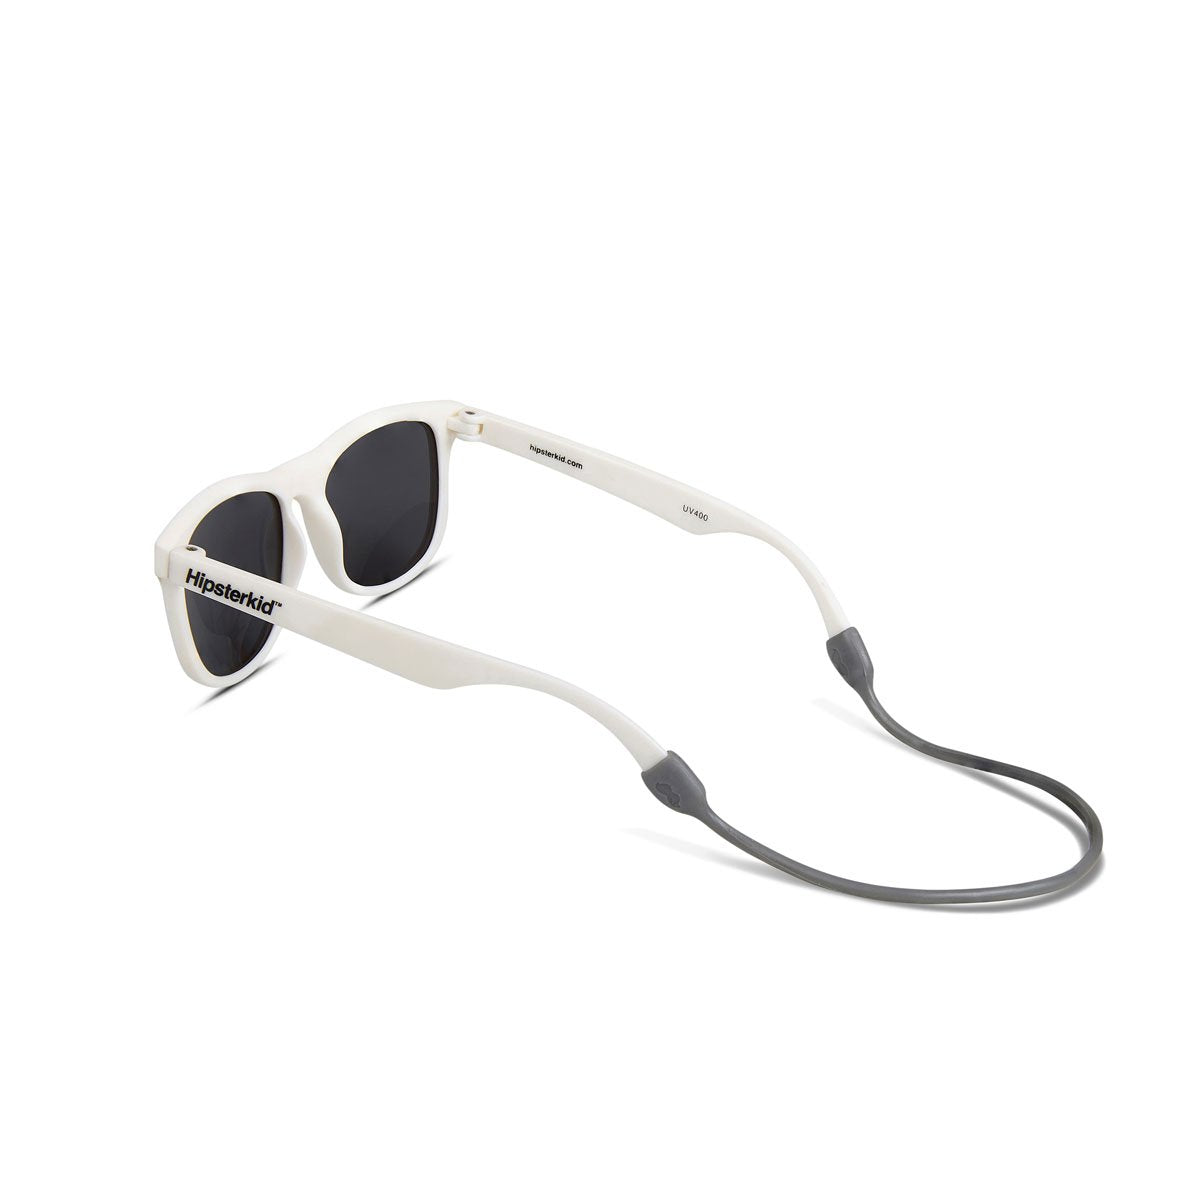 Hipsterkid Classics Kids Sunglasses - White (3-6 years)